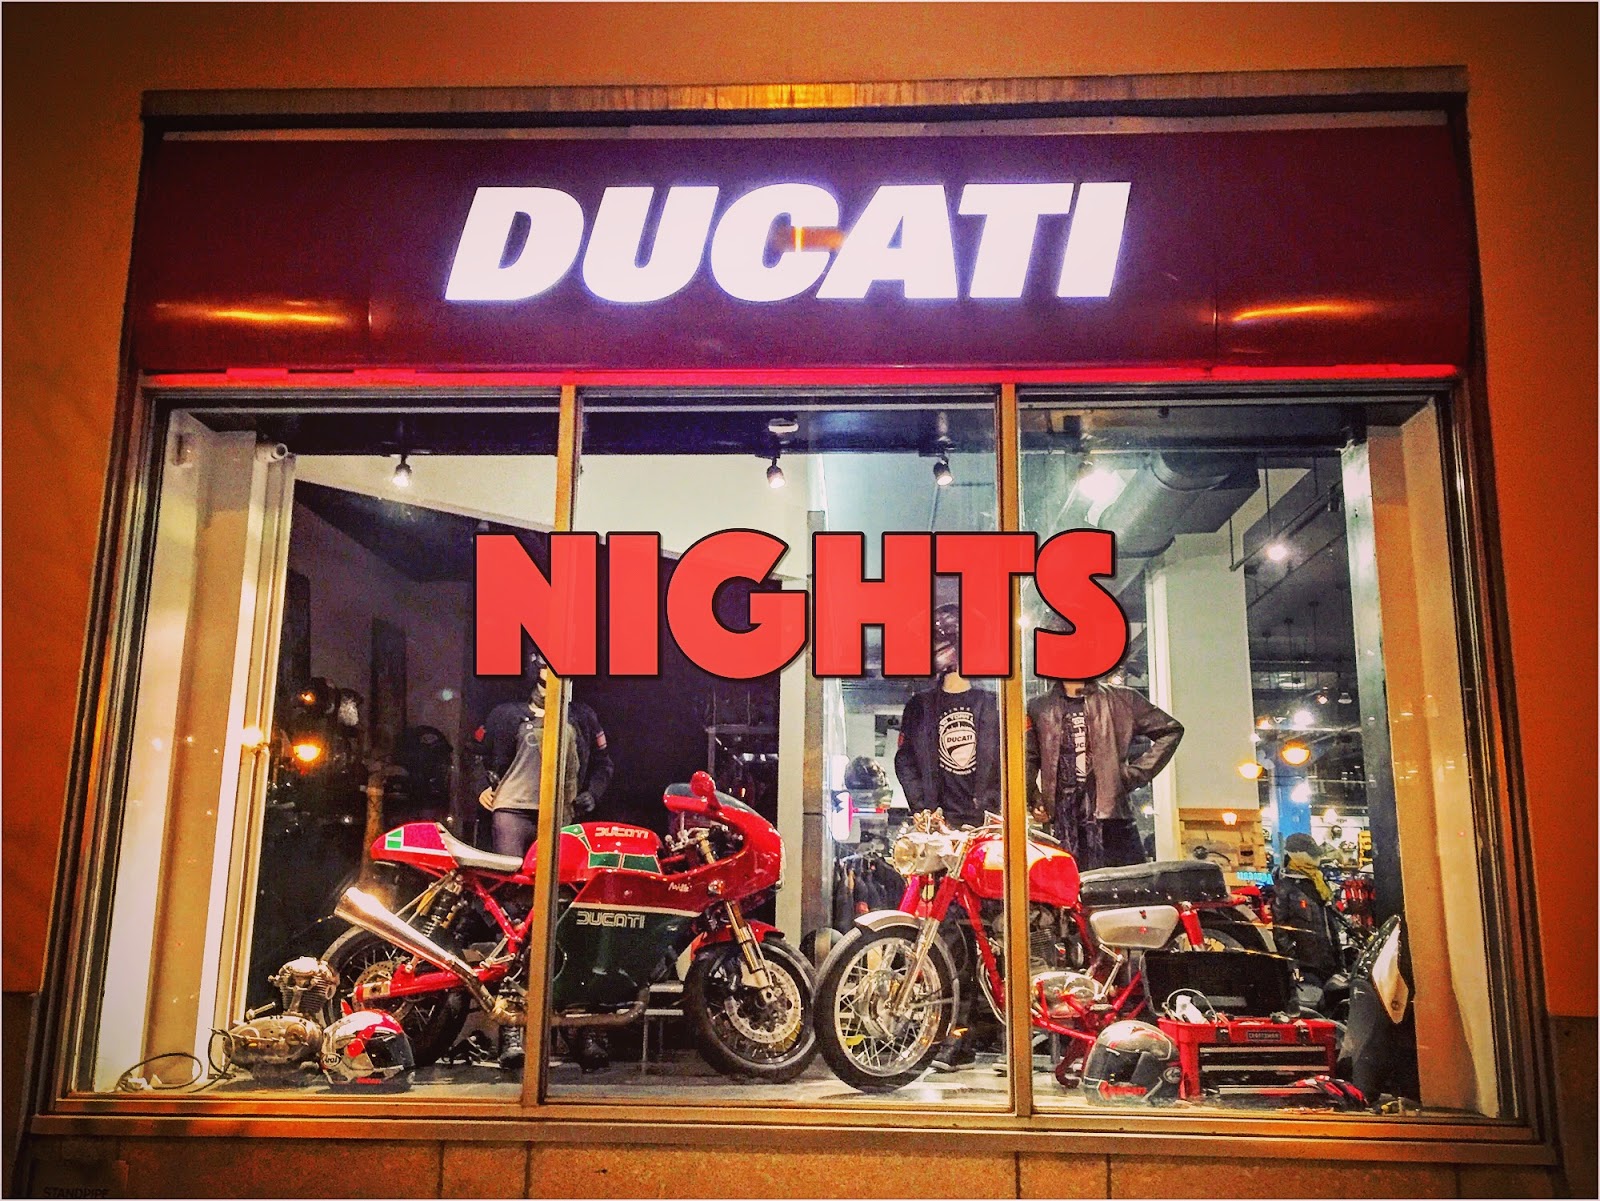 Ducati New York